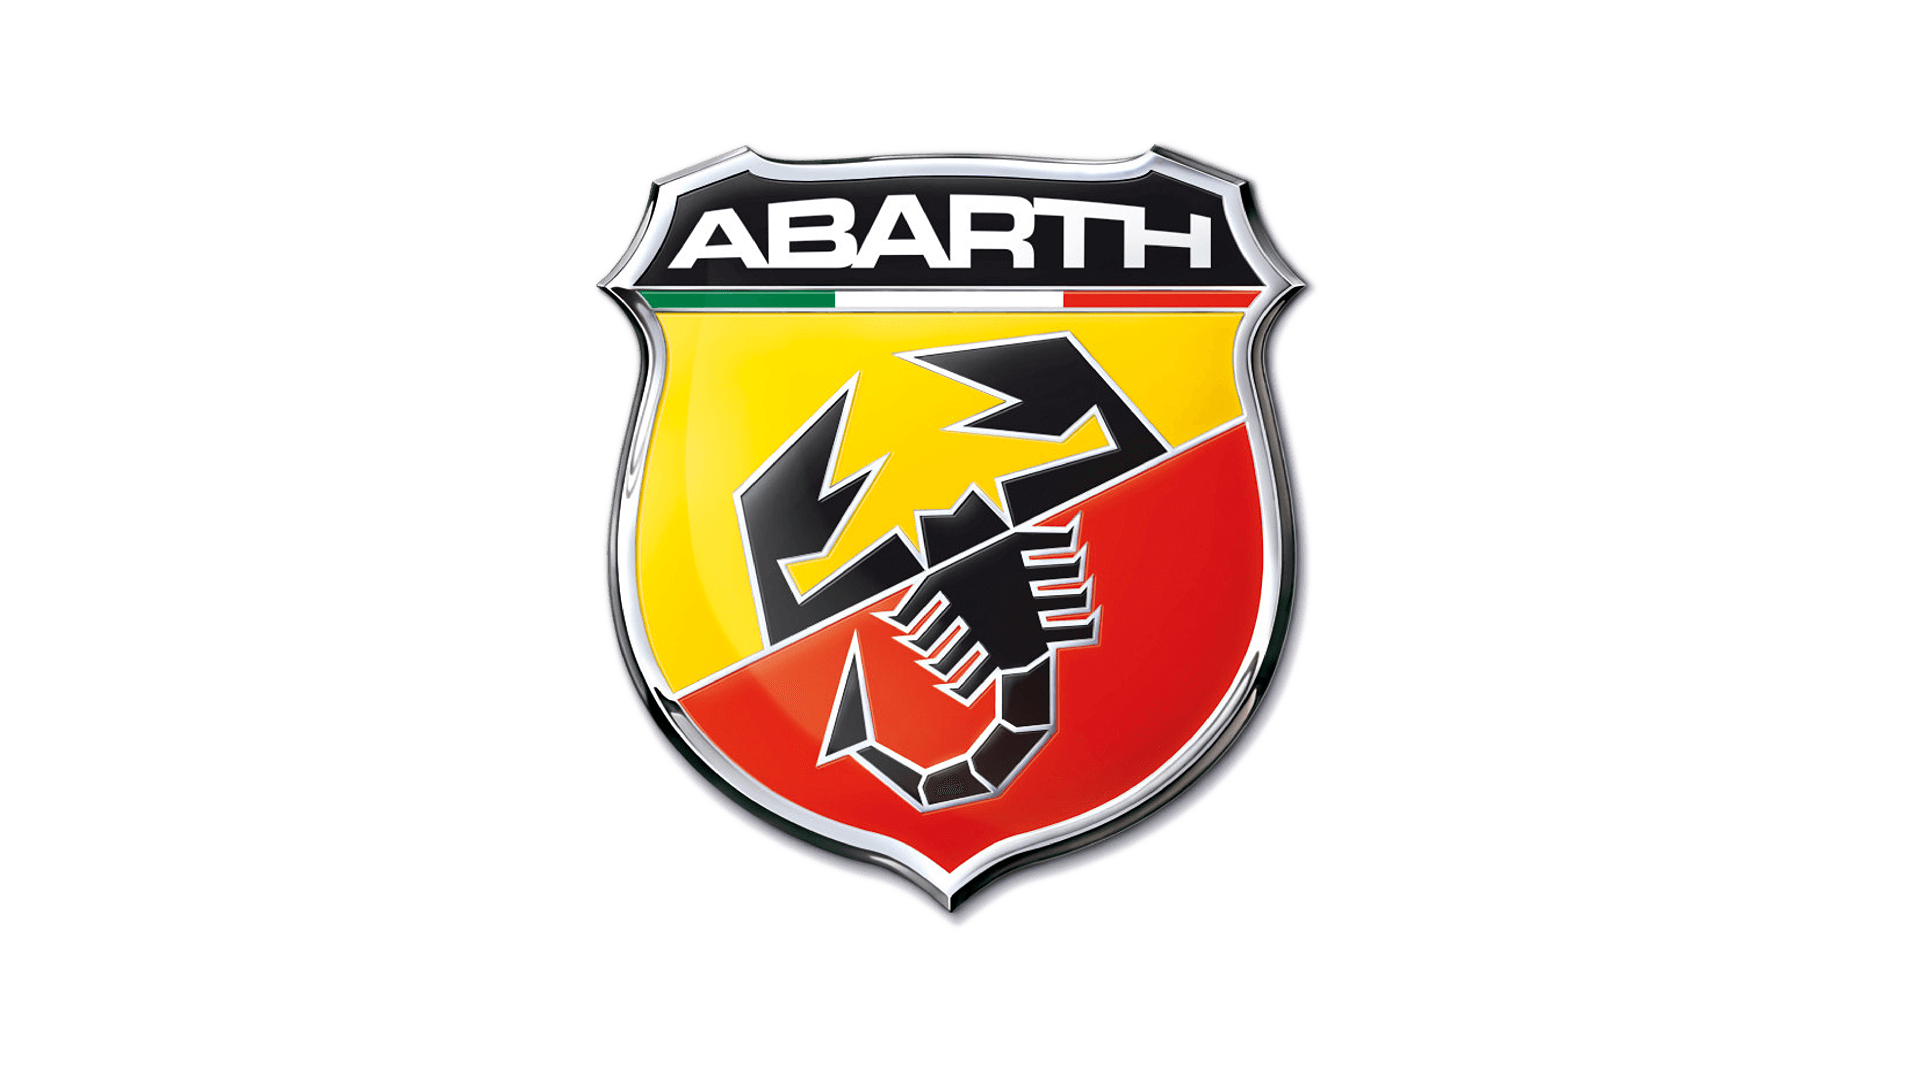 Abarth logo image